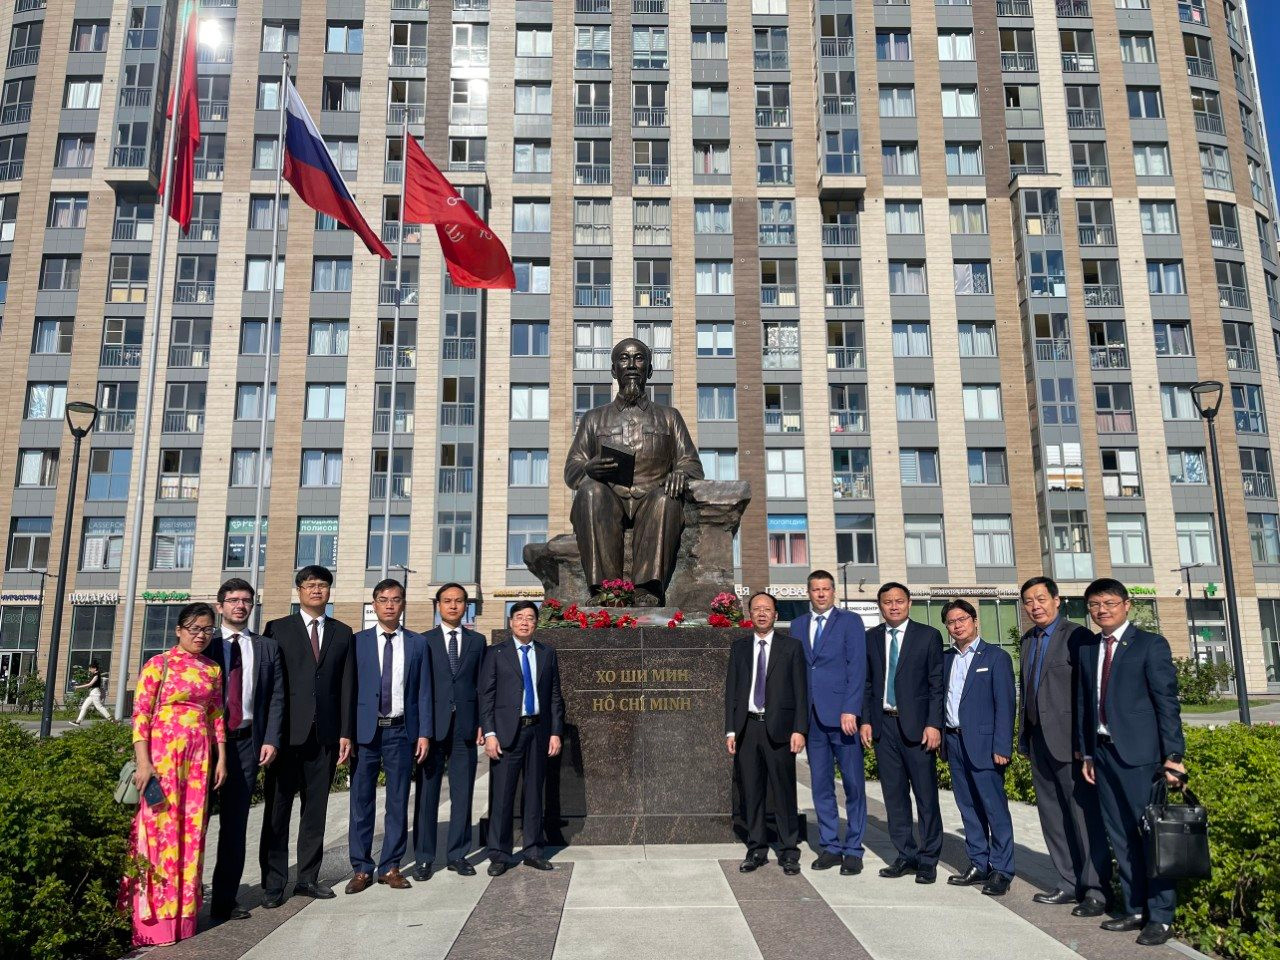 Các đại biểu chụp ảnh lưu niệm tại tượng đài Chủ tịch Hồ Chí Minh ở Xanh Pê-téc-bua. Ảnh: Báo Nghệ An